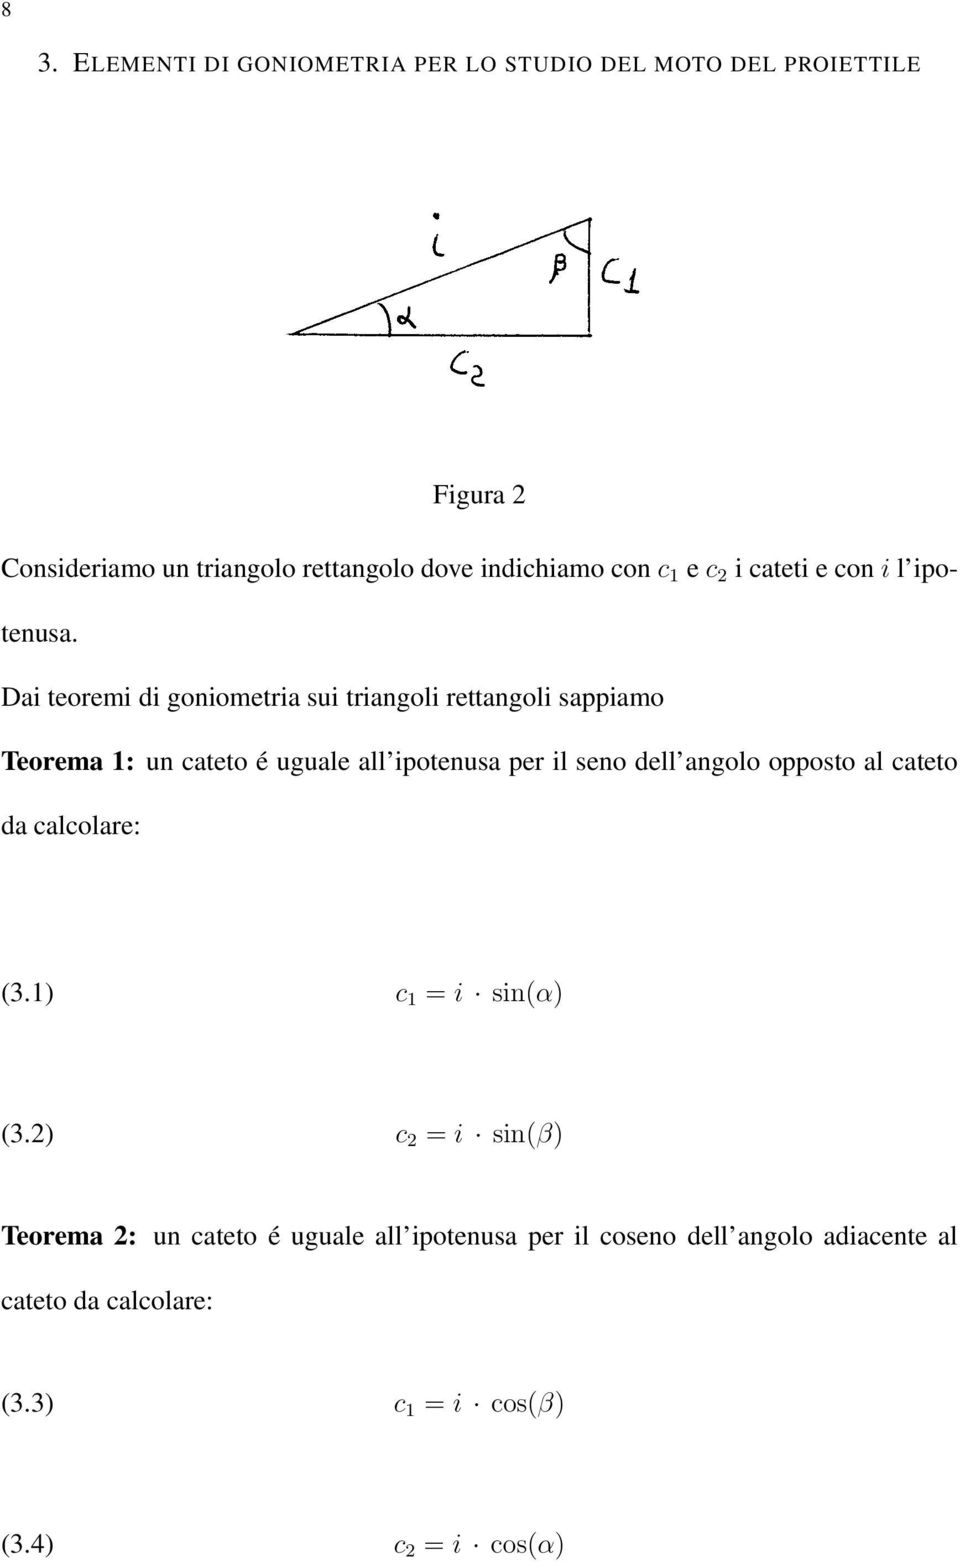 Dai teoremi di oniometria sui trianoli rettanoli sappiamo Teorema 1: un cateto é uuale all ipotenusa per il seno dell anolo